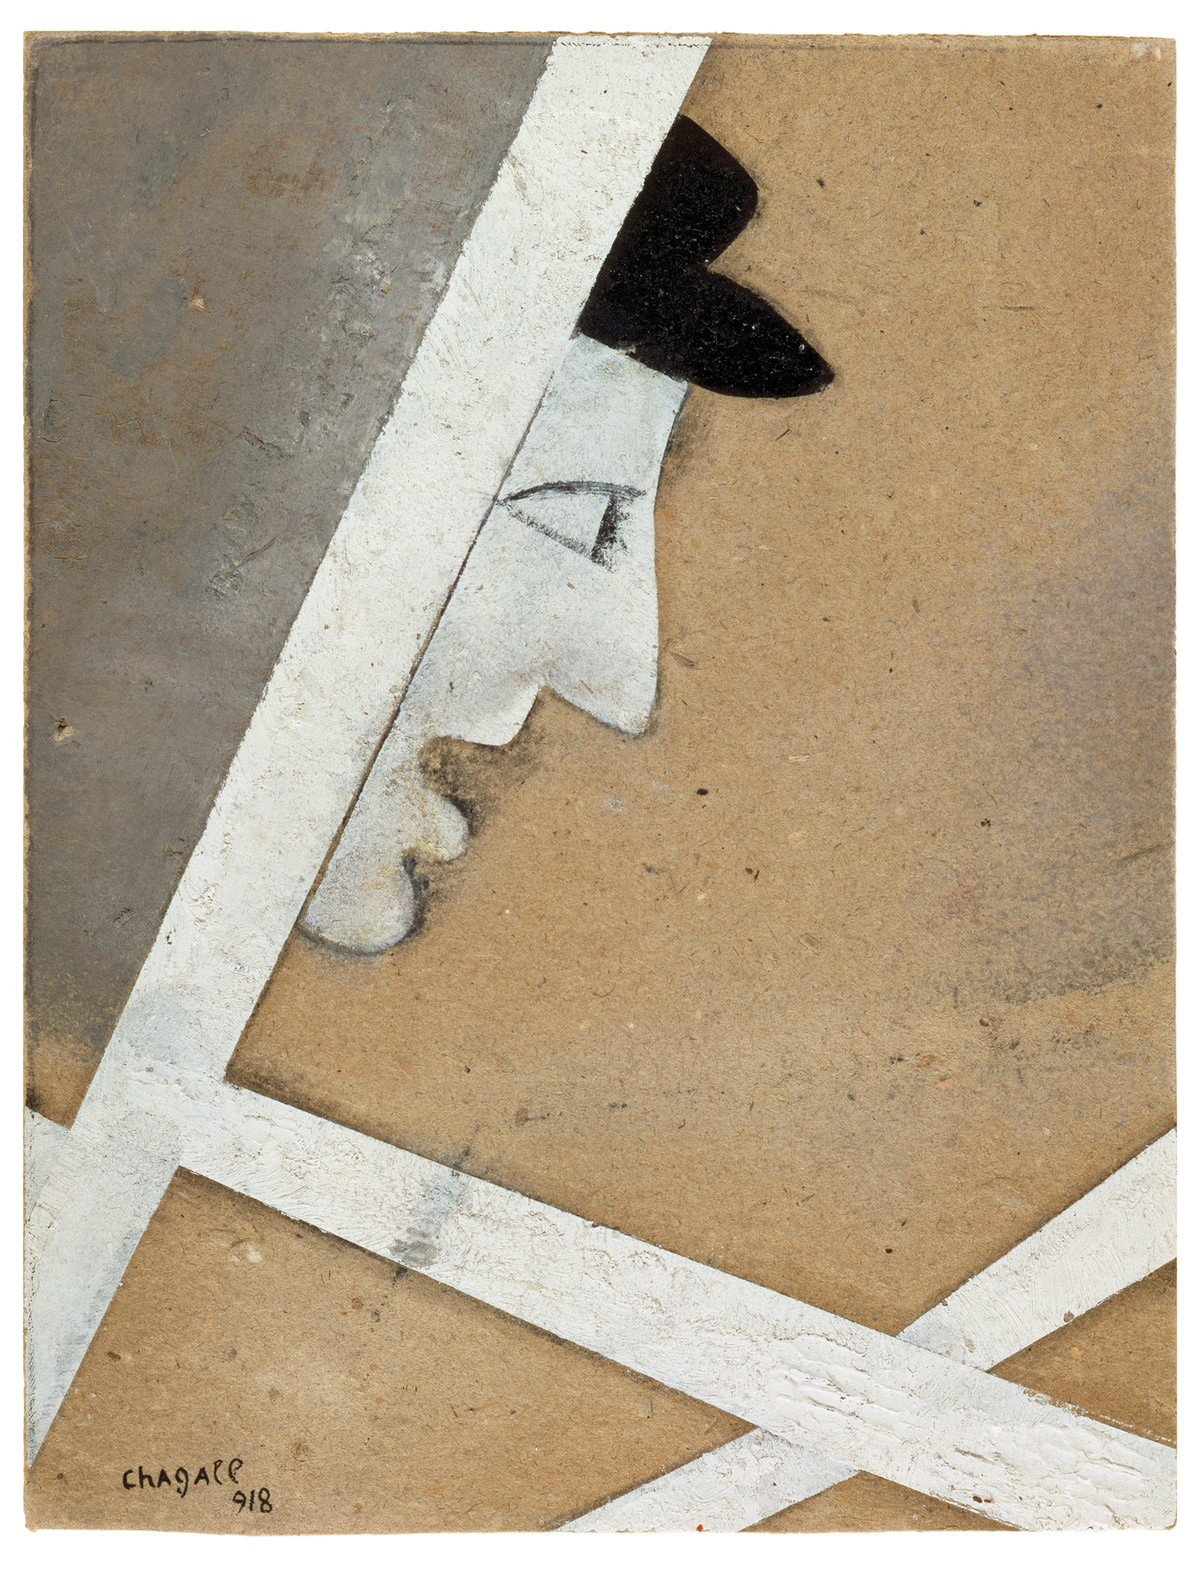 Marc Chagall: Das Profil im Fenster, 1918, Grafit, Gouache und Tinte auf Karton, 22 x 16,8 cm, Musée national d'art moderne/ Centre de création industrielle, Centre Georges Pompidou, Paris, © Pro Litteris, Zürich